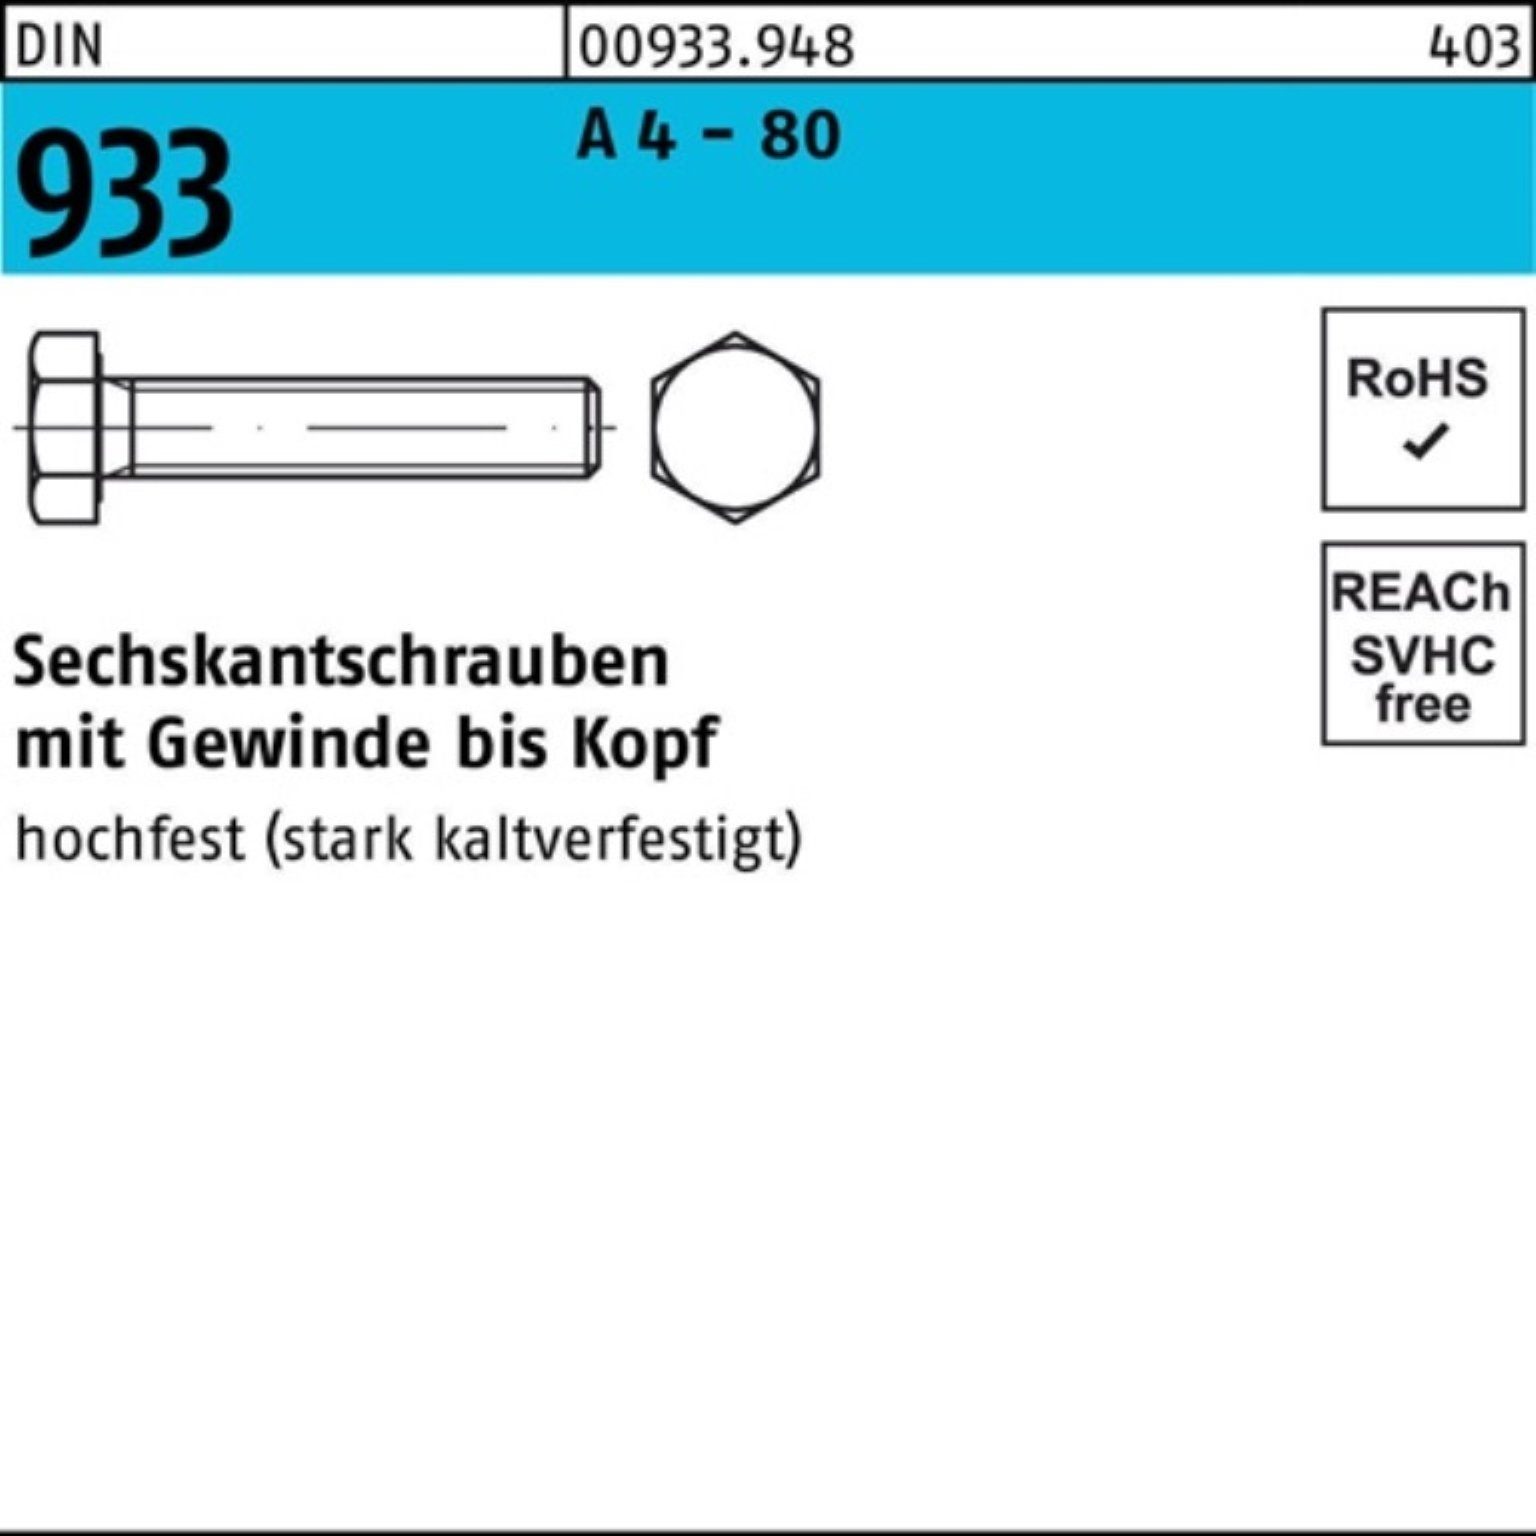 Reyher Sechskantschraube 100er Pack Sechskantschraube DIN 933 VG M10x 50 A 4 - 80 100 Stück DI